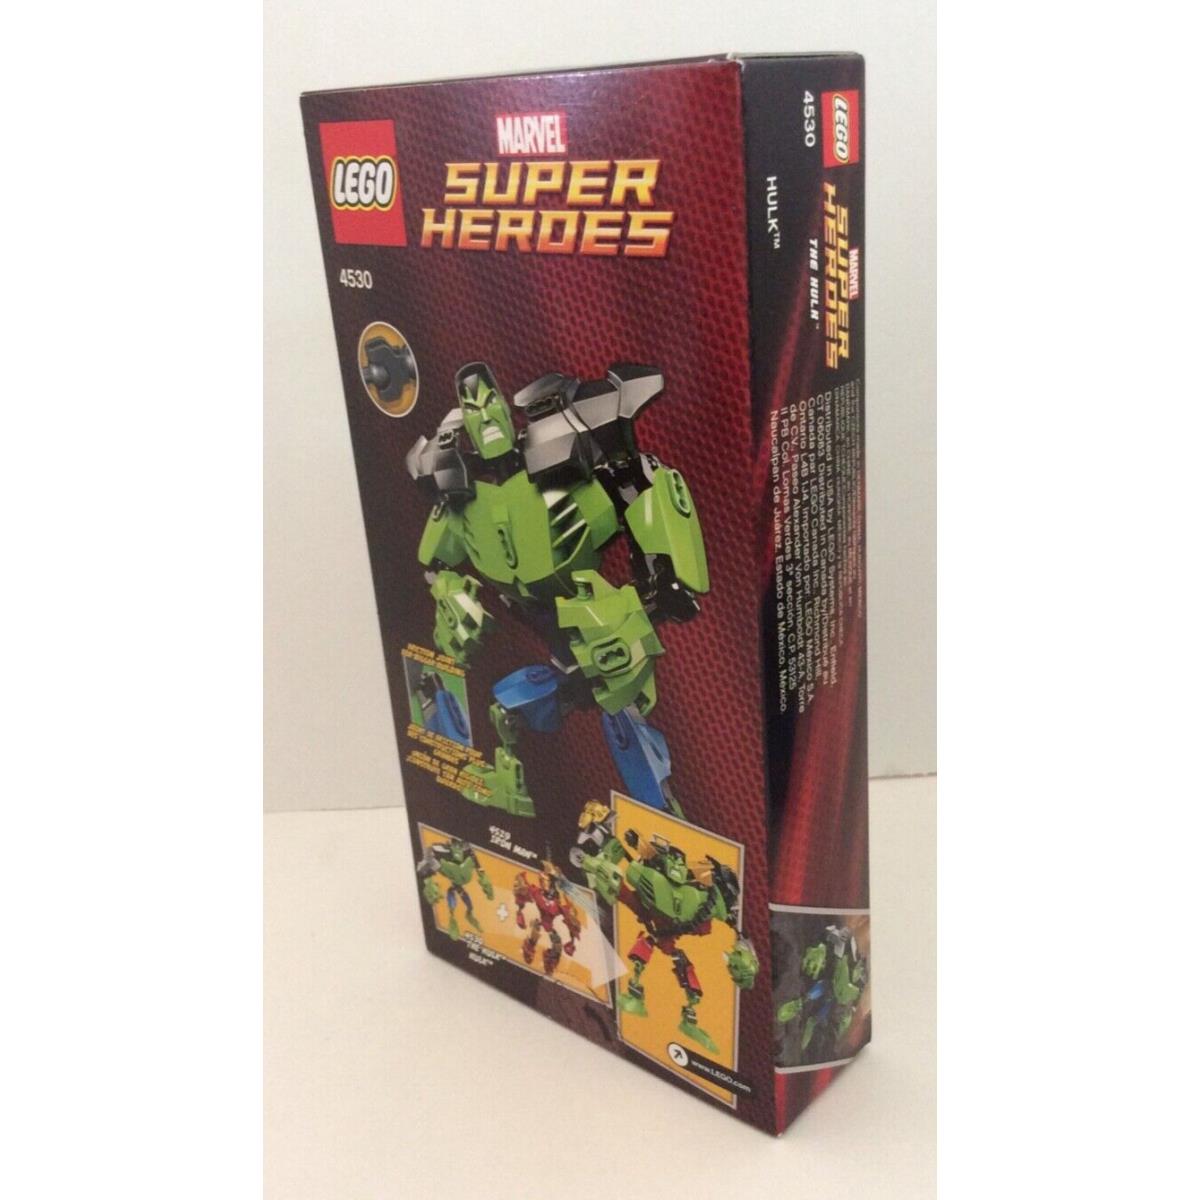 Lego - Marvel - Avengers Super Heroes: The Hulk 4530